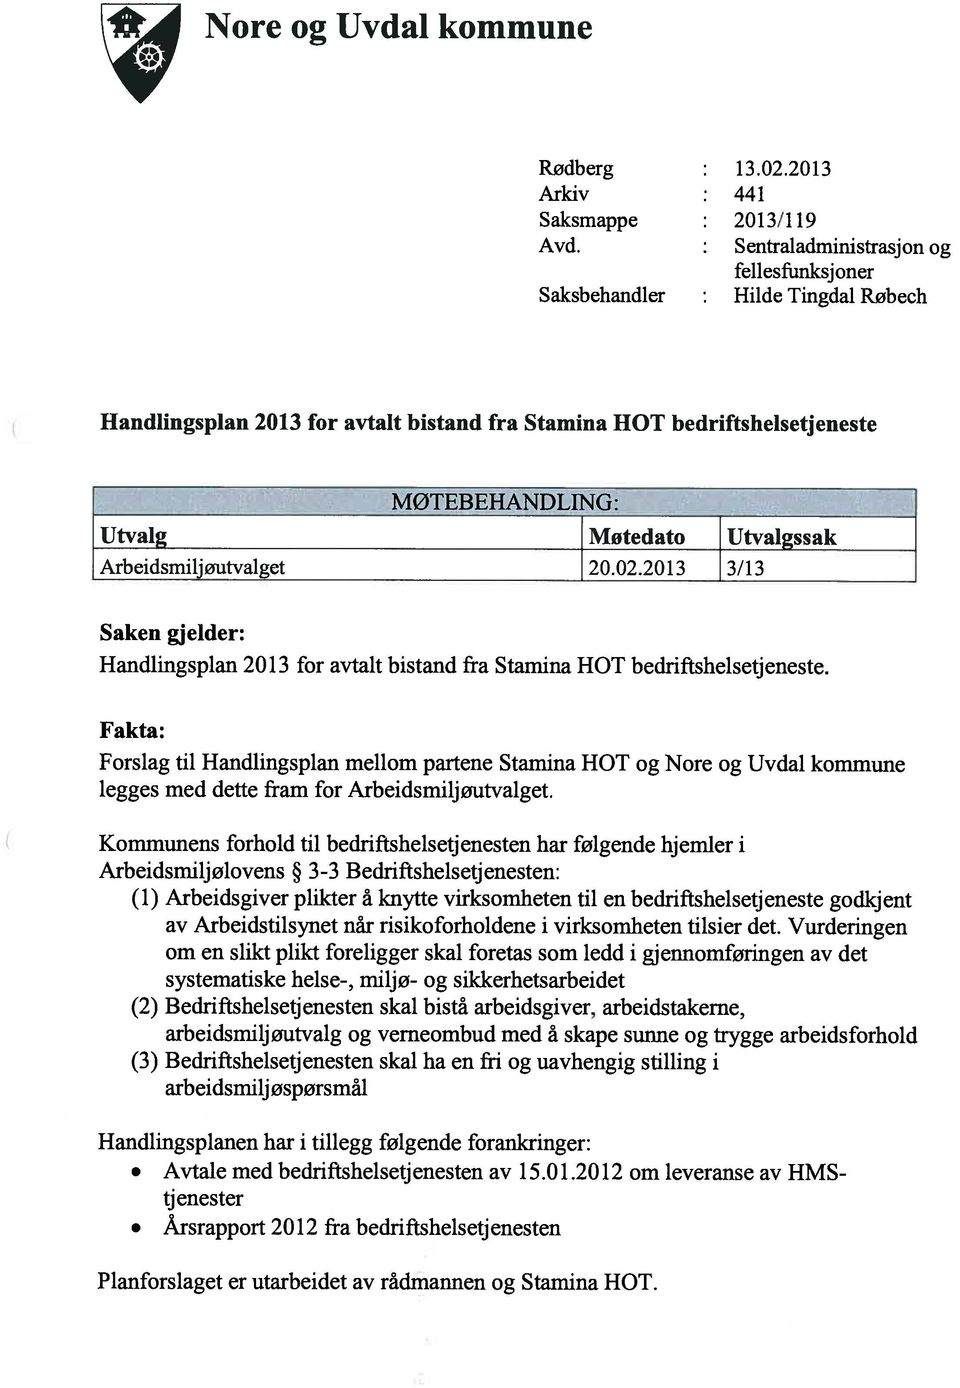 Arbeidsmiljøutvalget 20.02.2013 3/13 Saken gjelder: Handlingspian 2013 for avtalt bistand fra Stamina ROT bedriftshelsetjeneste.